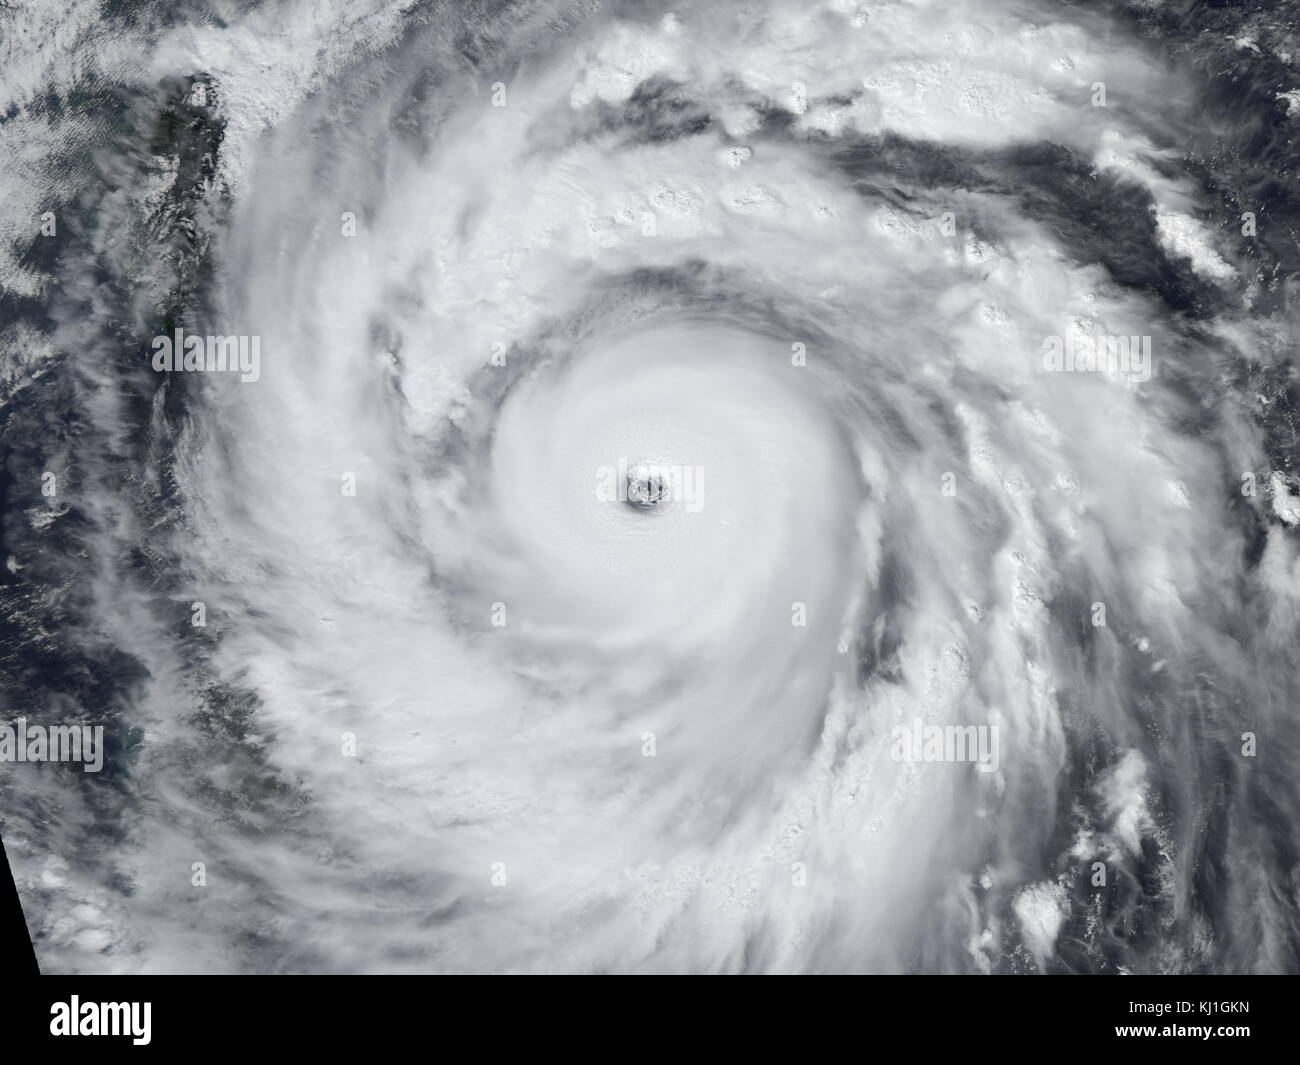 Typhon Jangmi (prononcé [t ?a ?.mi]), connu dans le typhon aux Philippines comme 0phel, était la plus intense cyclone tropical dans le nord-ouest de l'océan Pacifique, au cours des années 2000 Banque D'Images